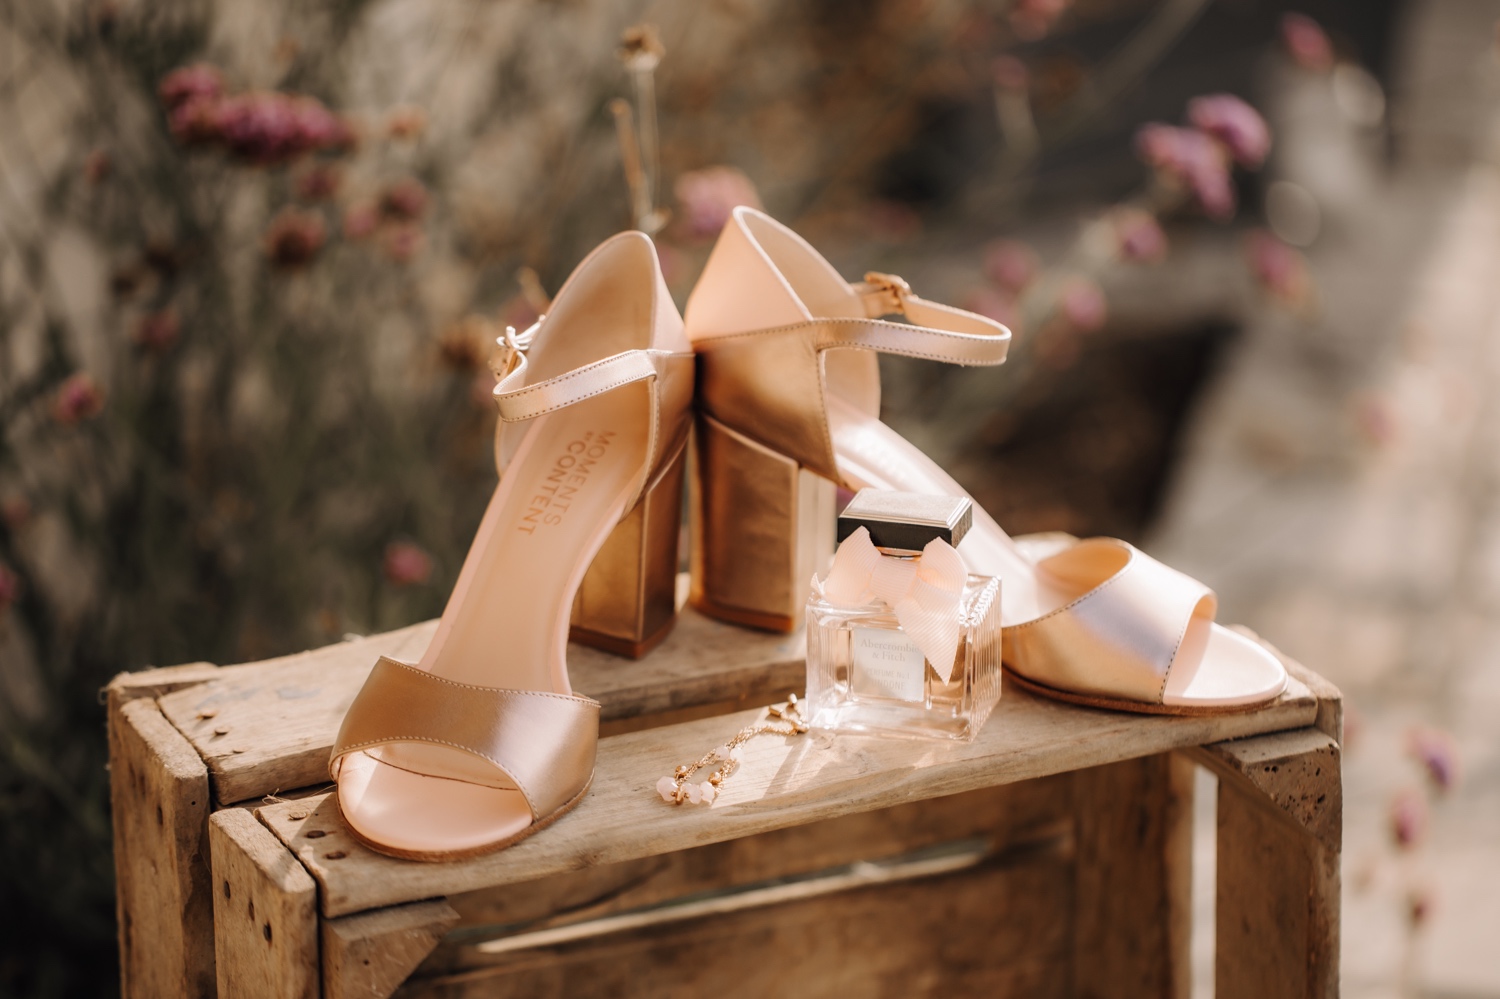 Huwelijksfotograaf Limburg - details van de bruid haar schoenen